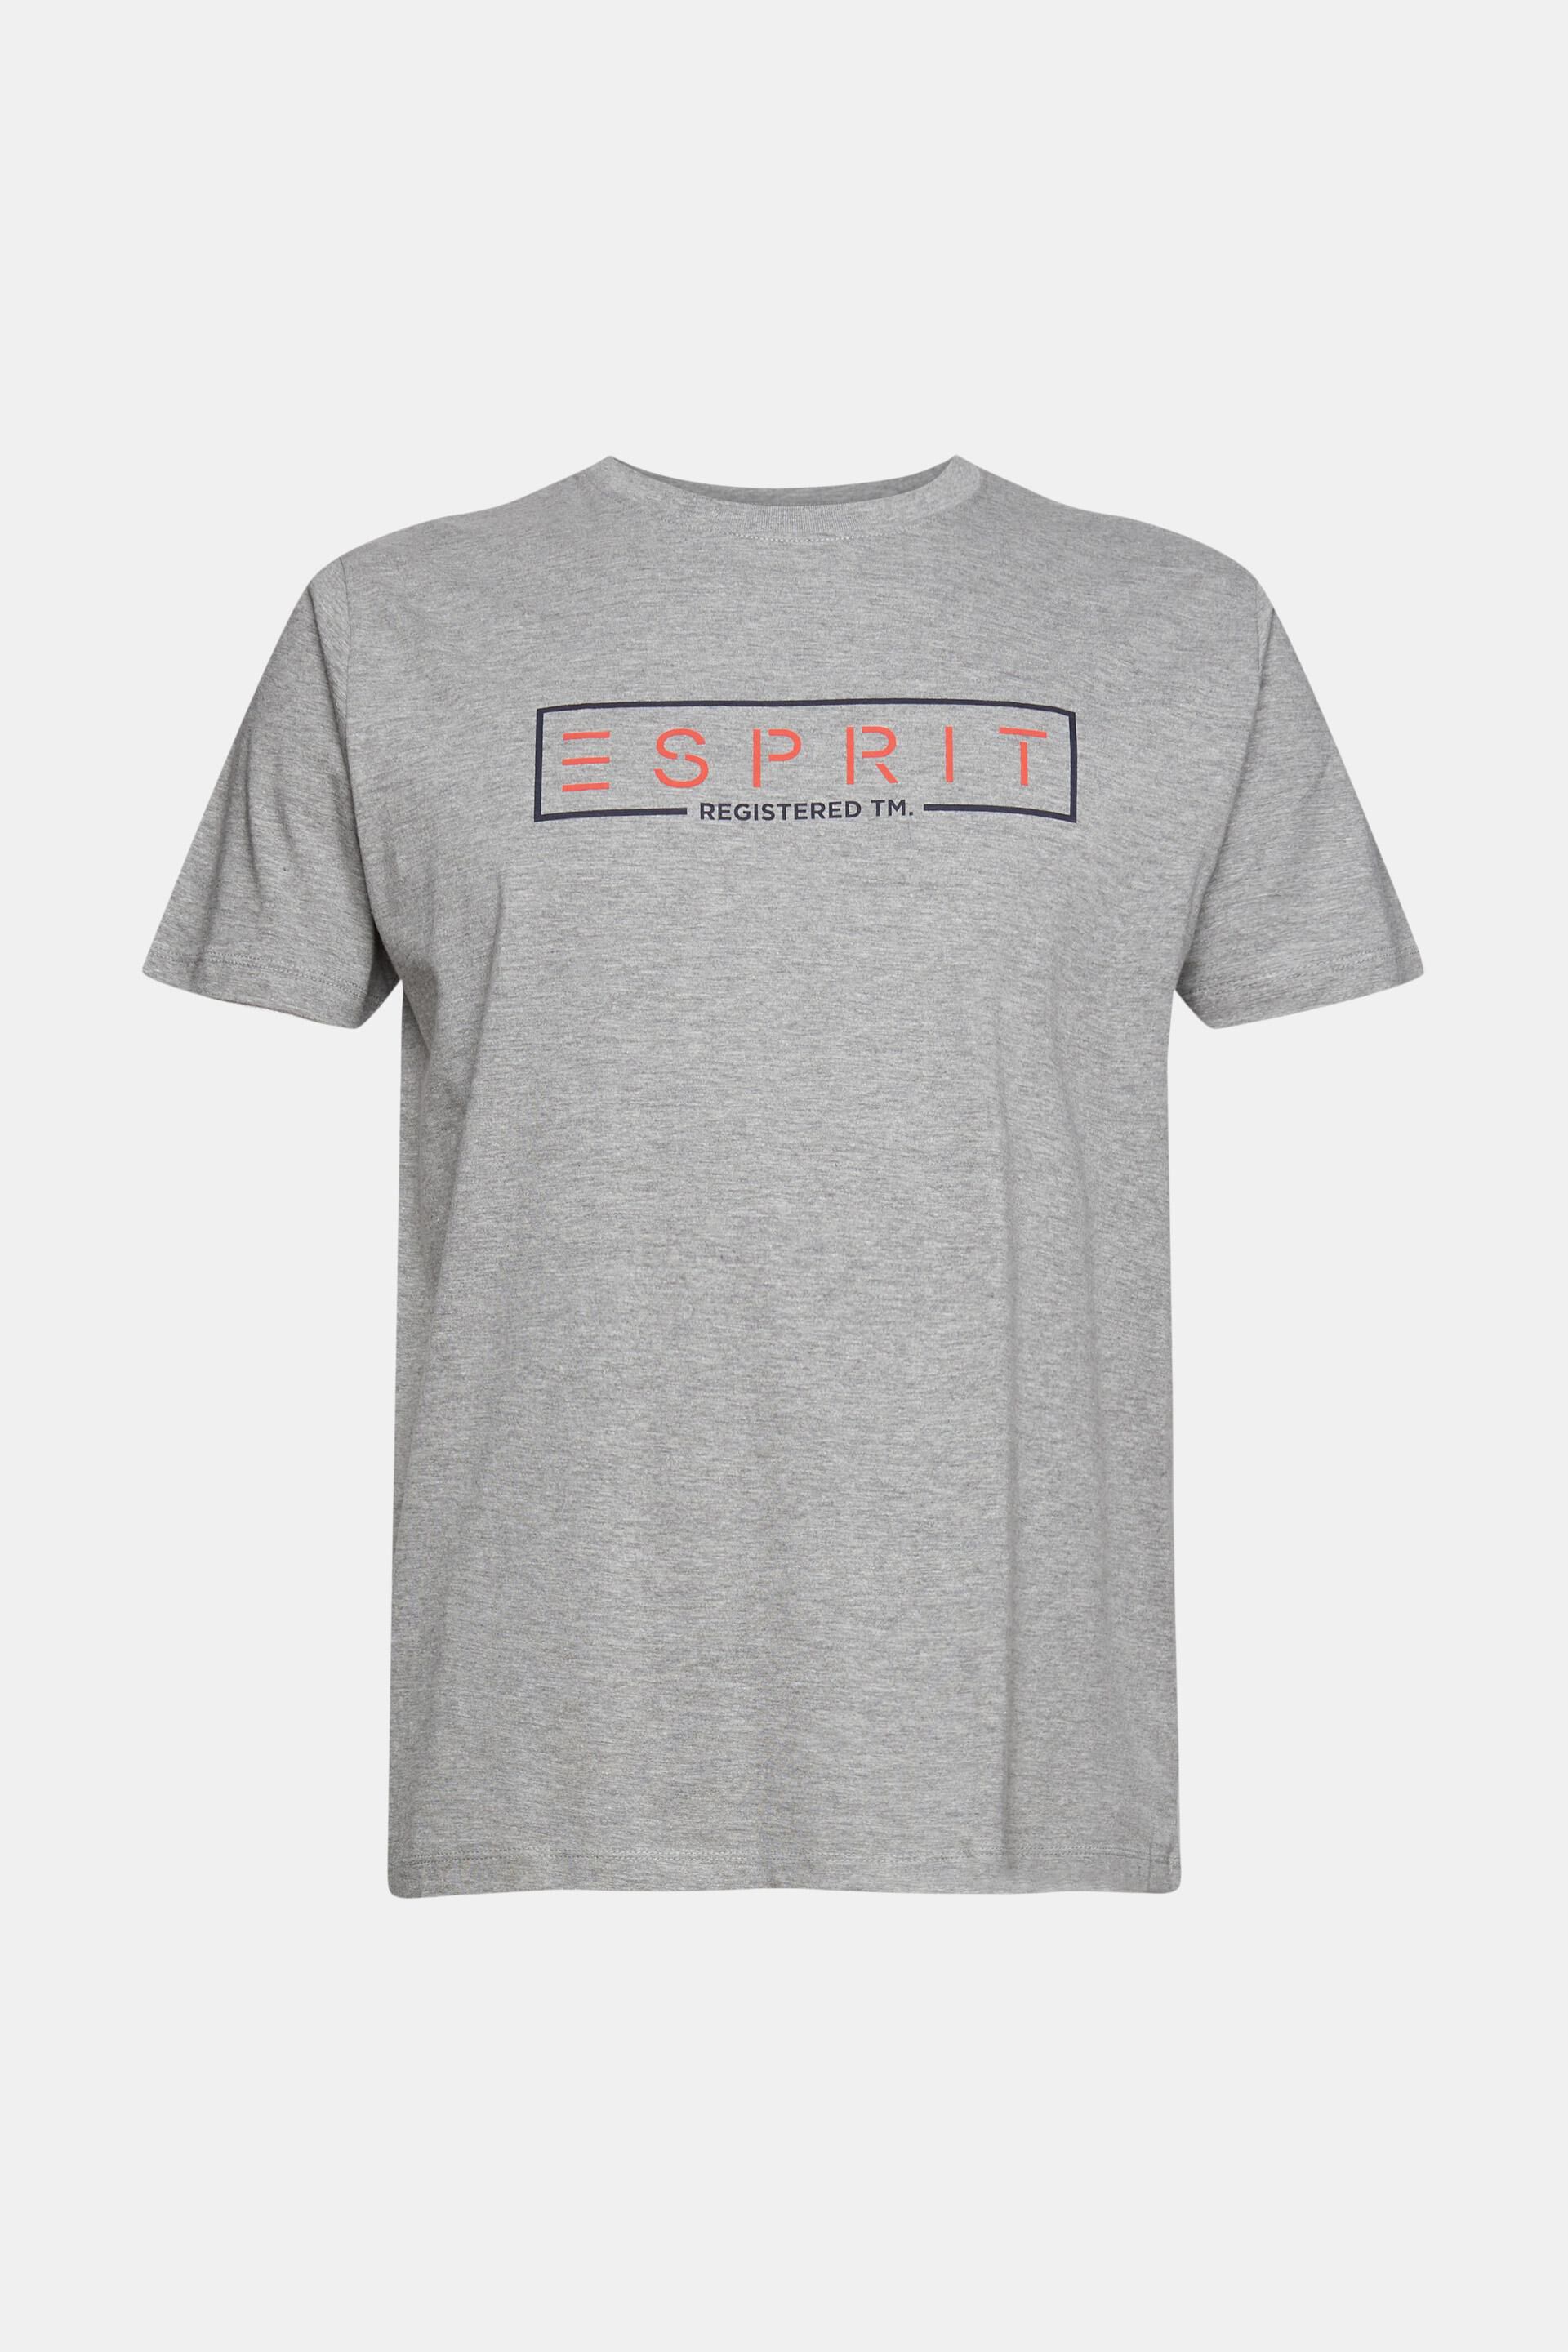 Esprit Camiseta para Hombre 